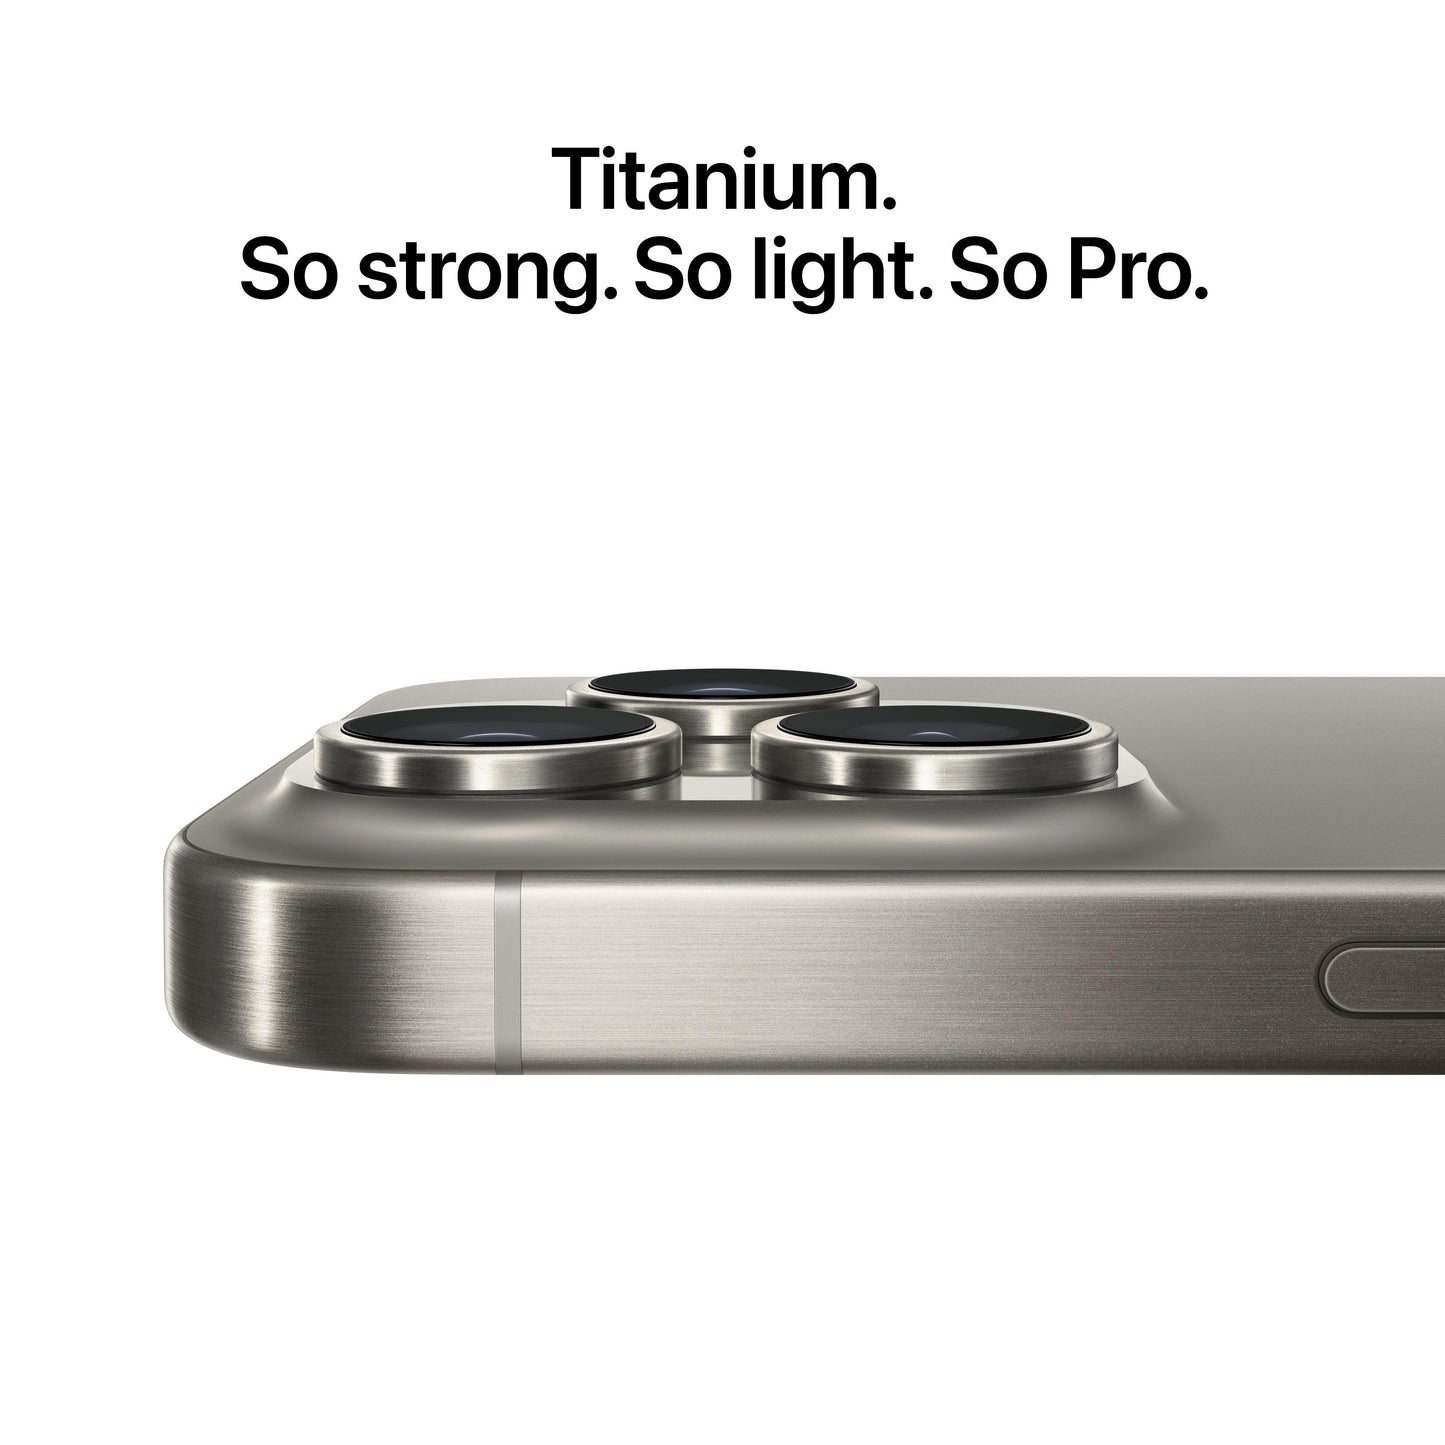 iPhone 15 Pro, 1 TB, Blauw titanium 